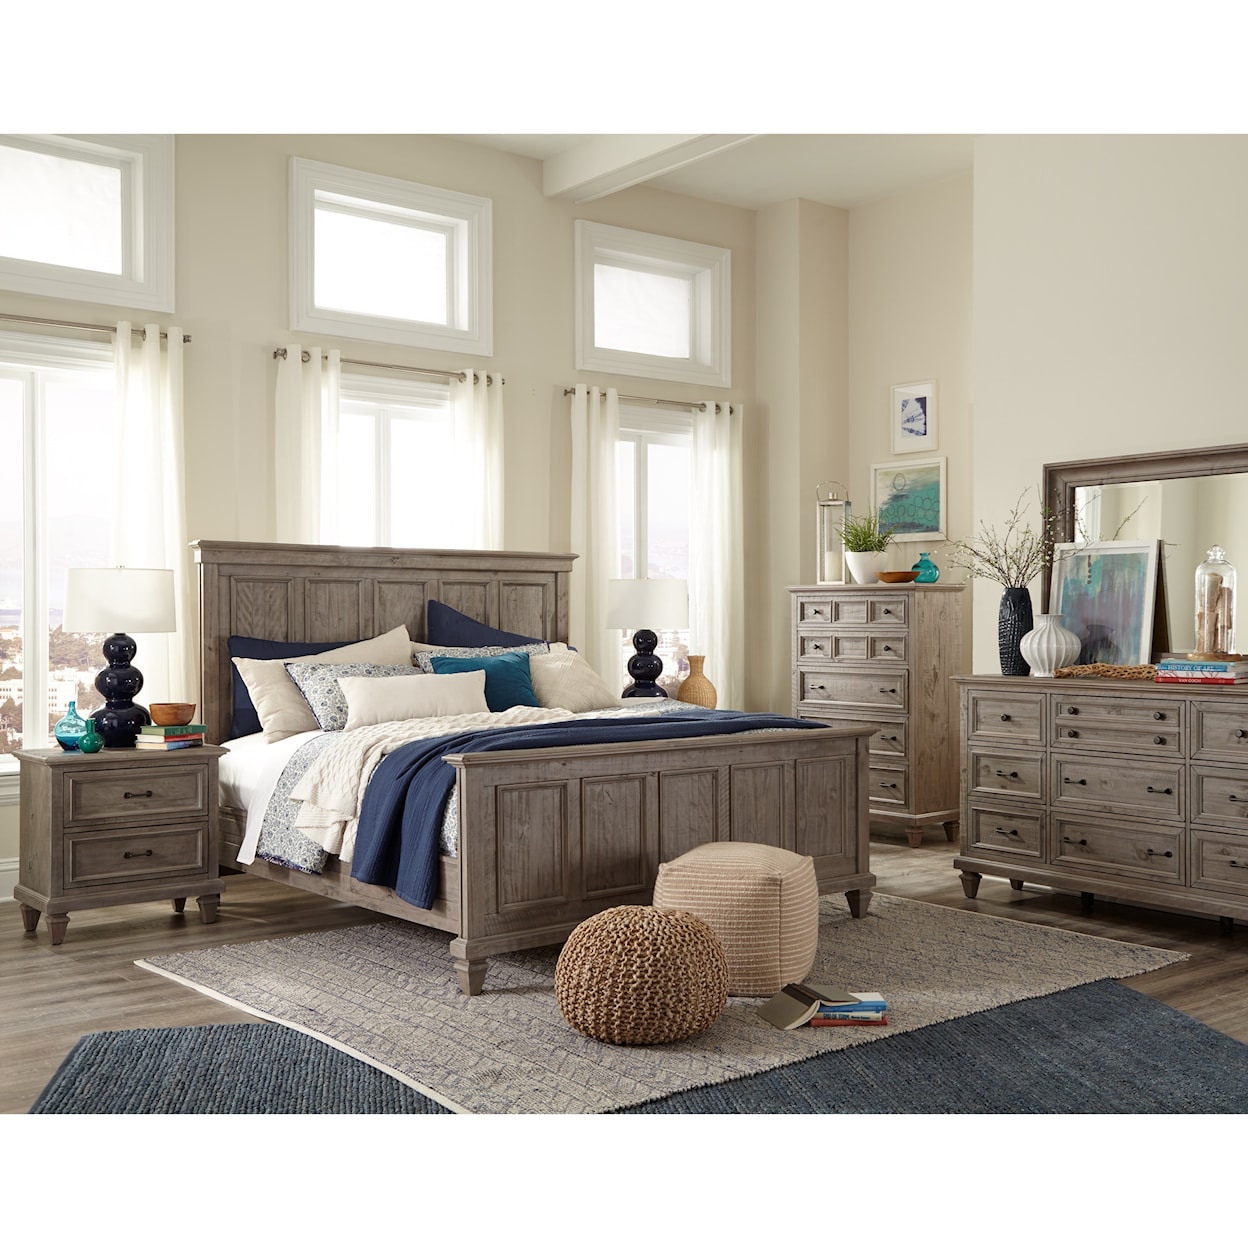 Magnussen Home Lancaster Bedroom Dresser and Mirror Set